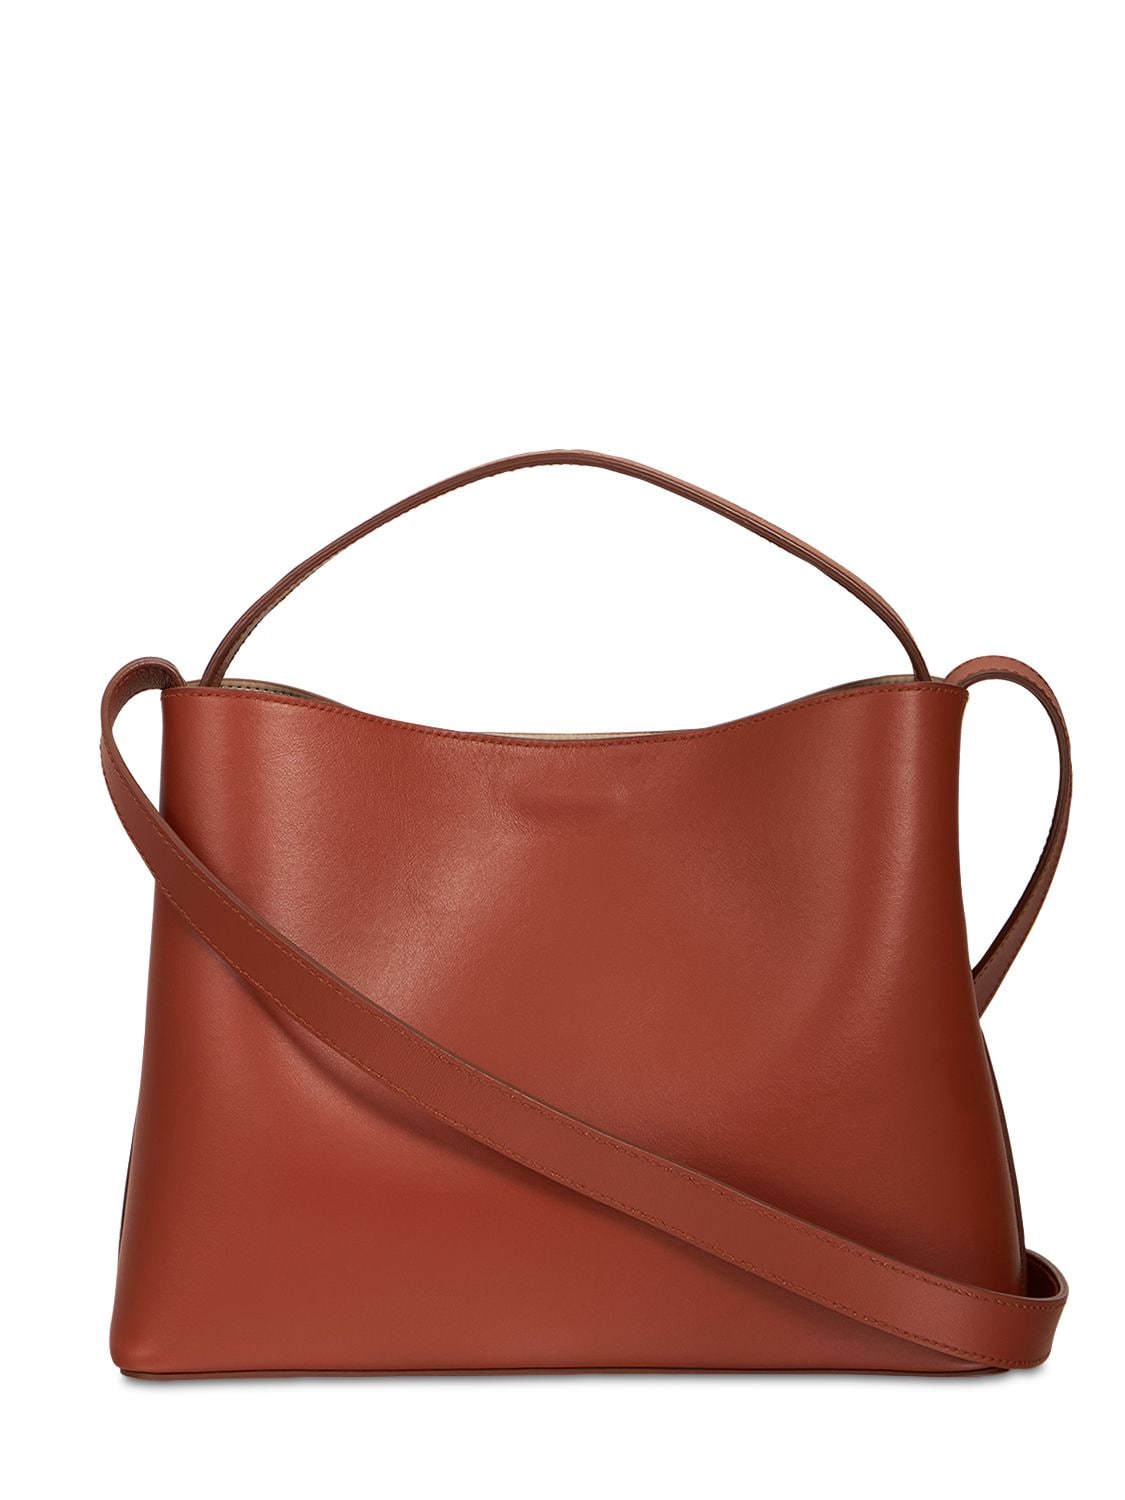 AESTHER EKME Mini Sac Smooth Leather Top Handle Bag